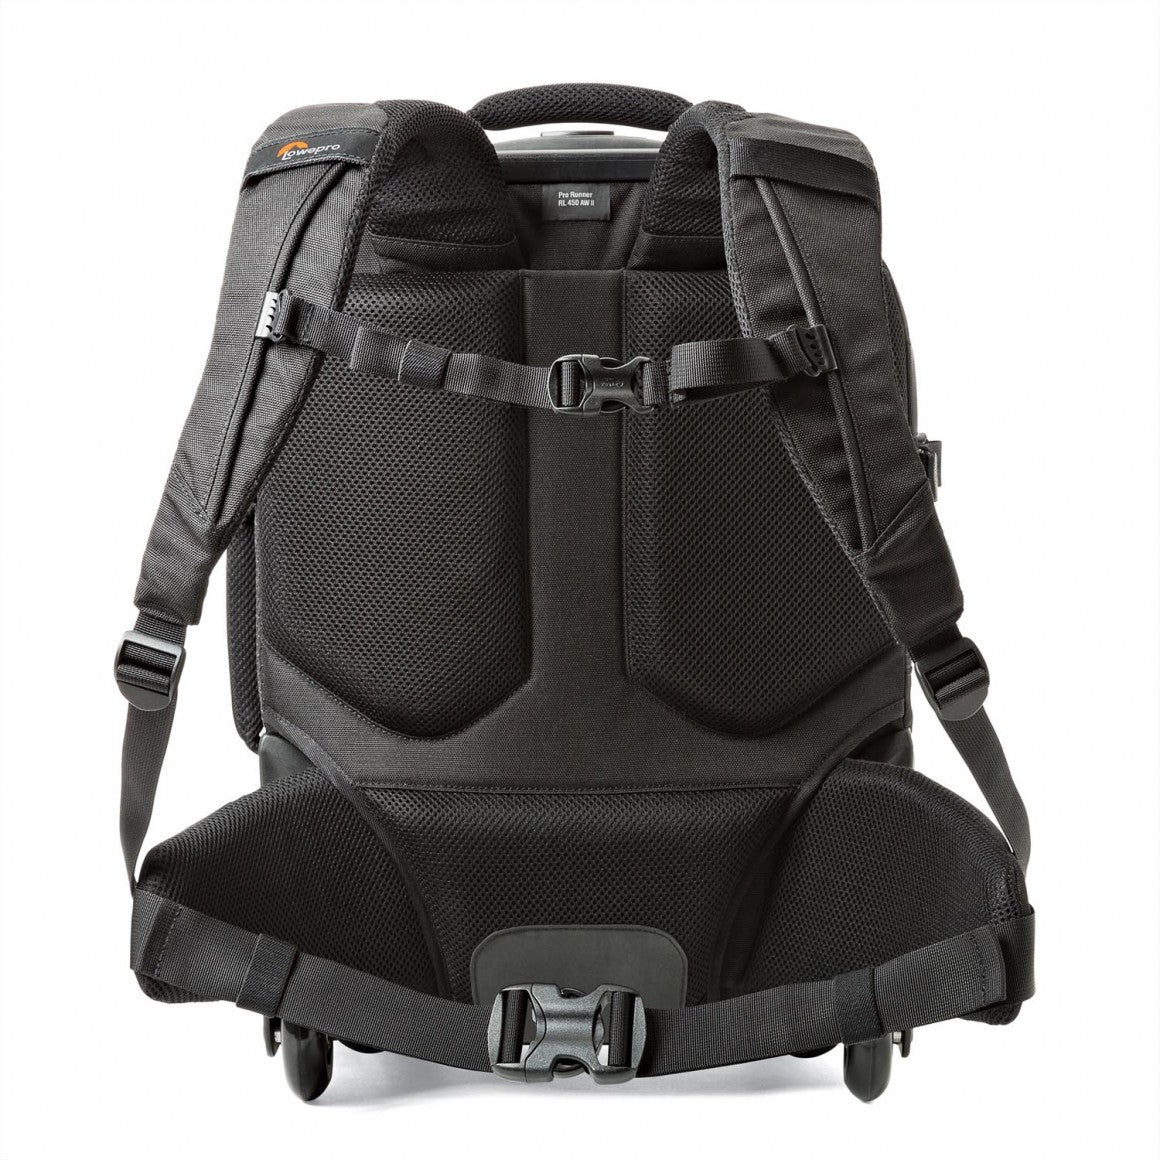 Lowepro Pro Runner RL x450 AW II Backpack (Black)